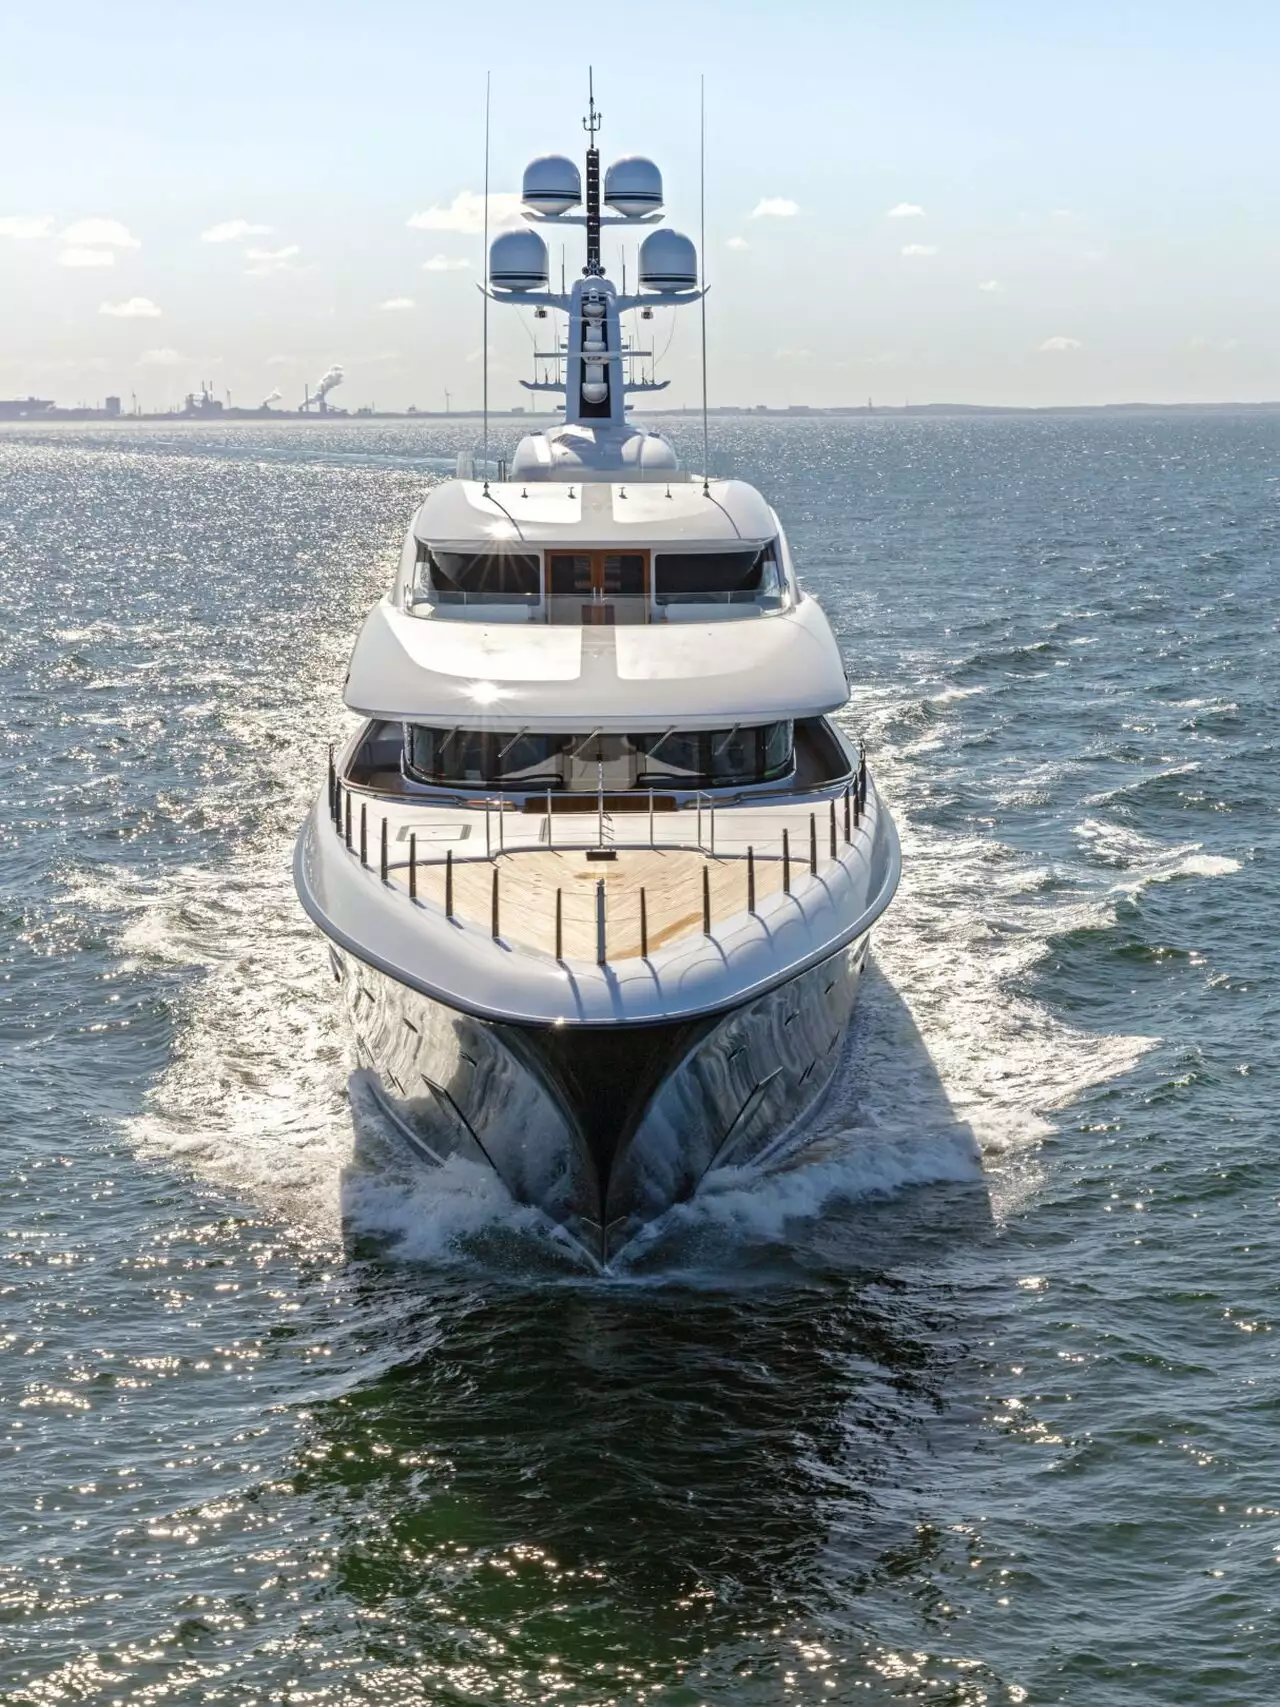 PODIUM yacht • Feadship • 2020 • owner Roger Penske